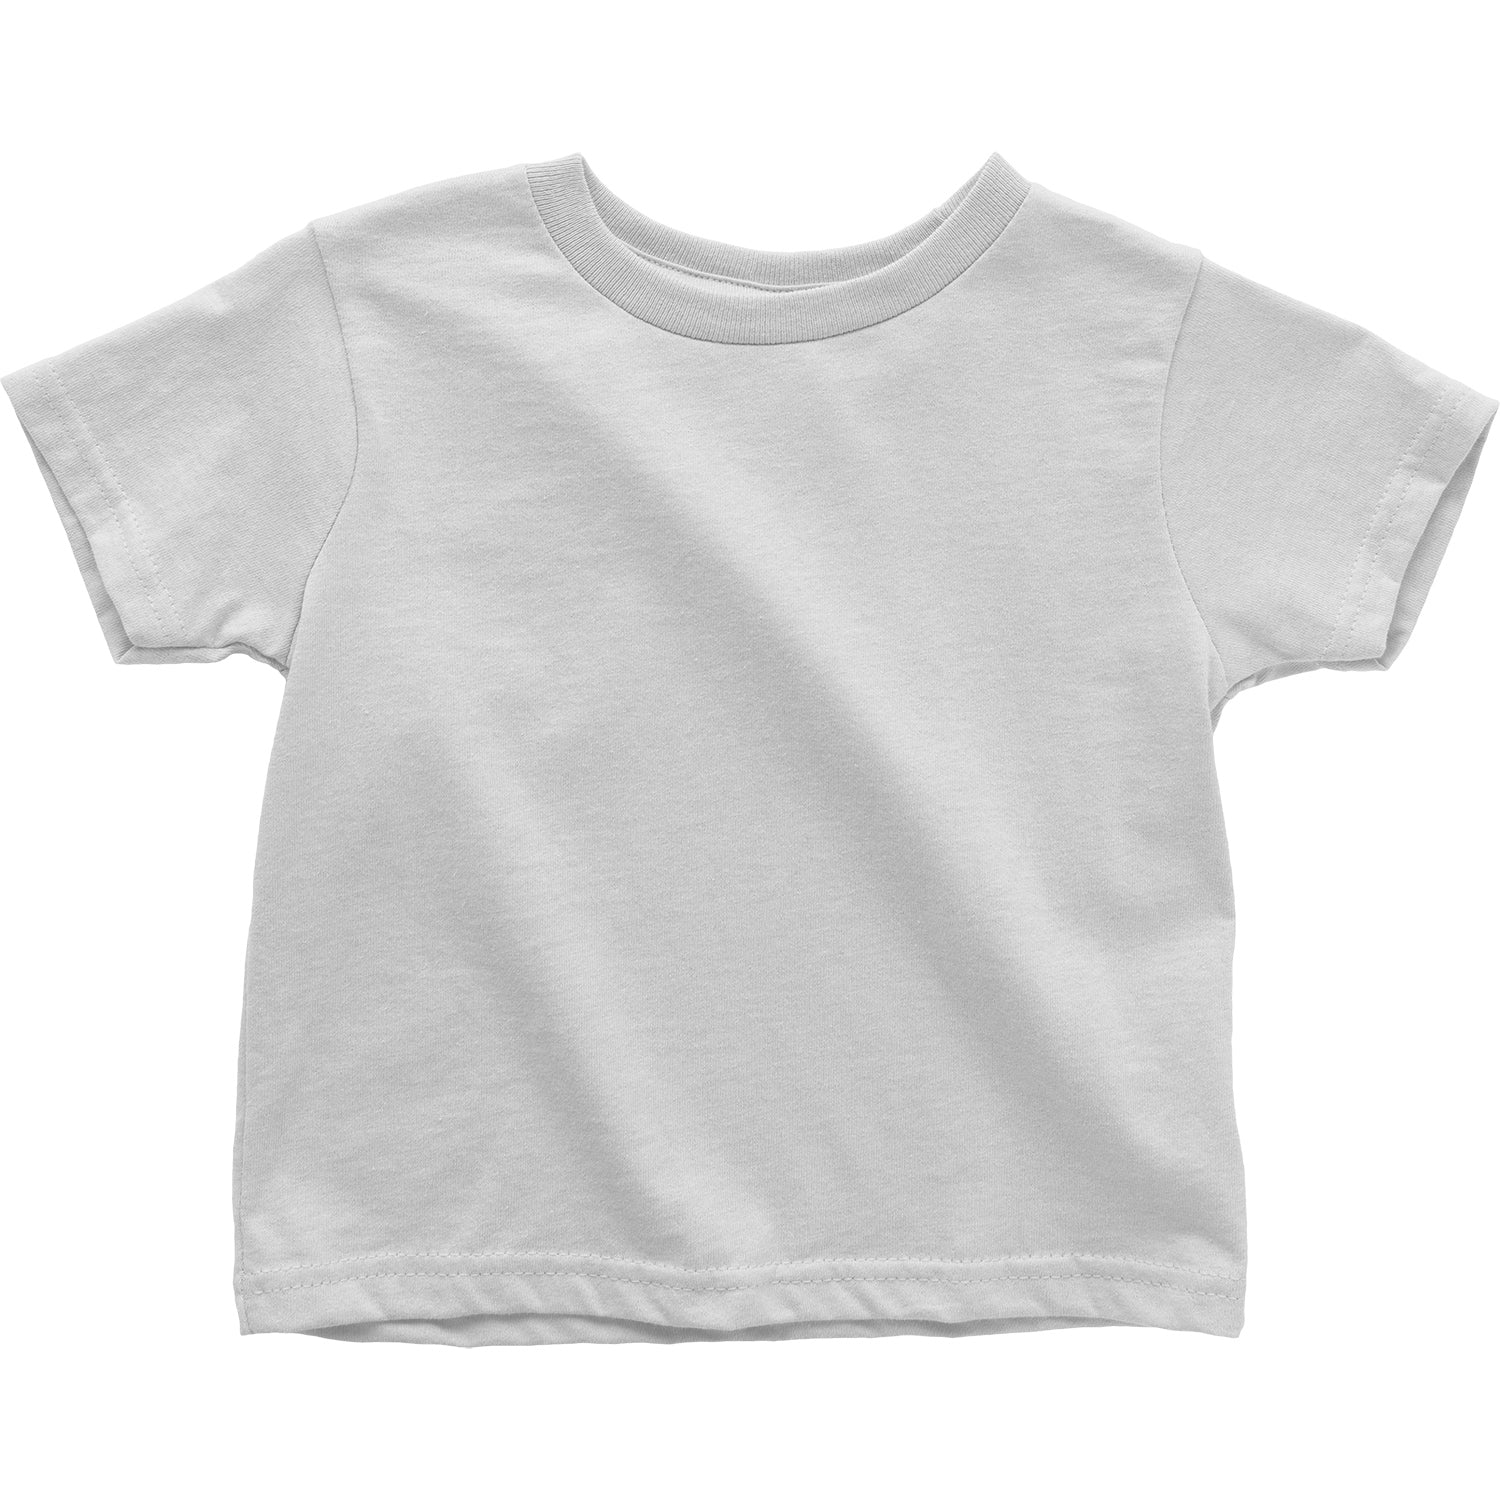 Toddler Short Sleeve Tee - White